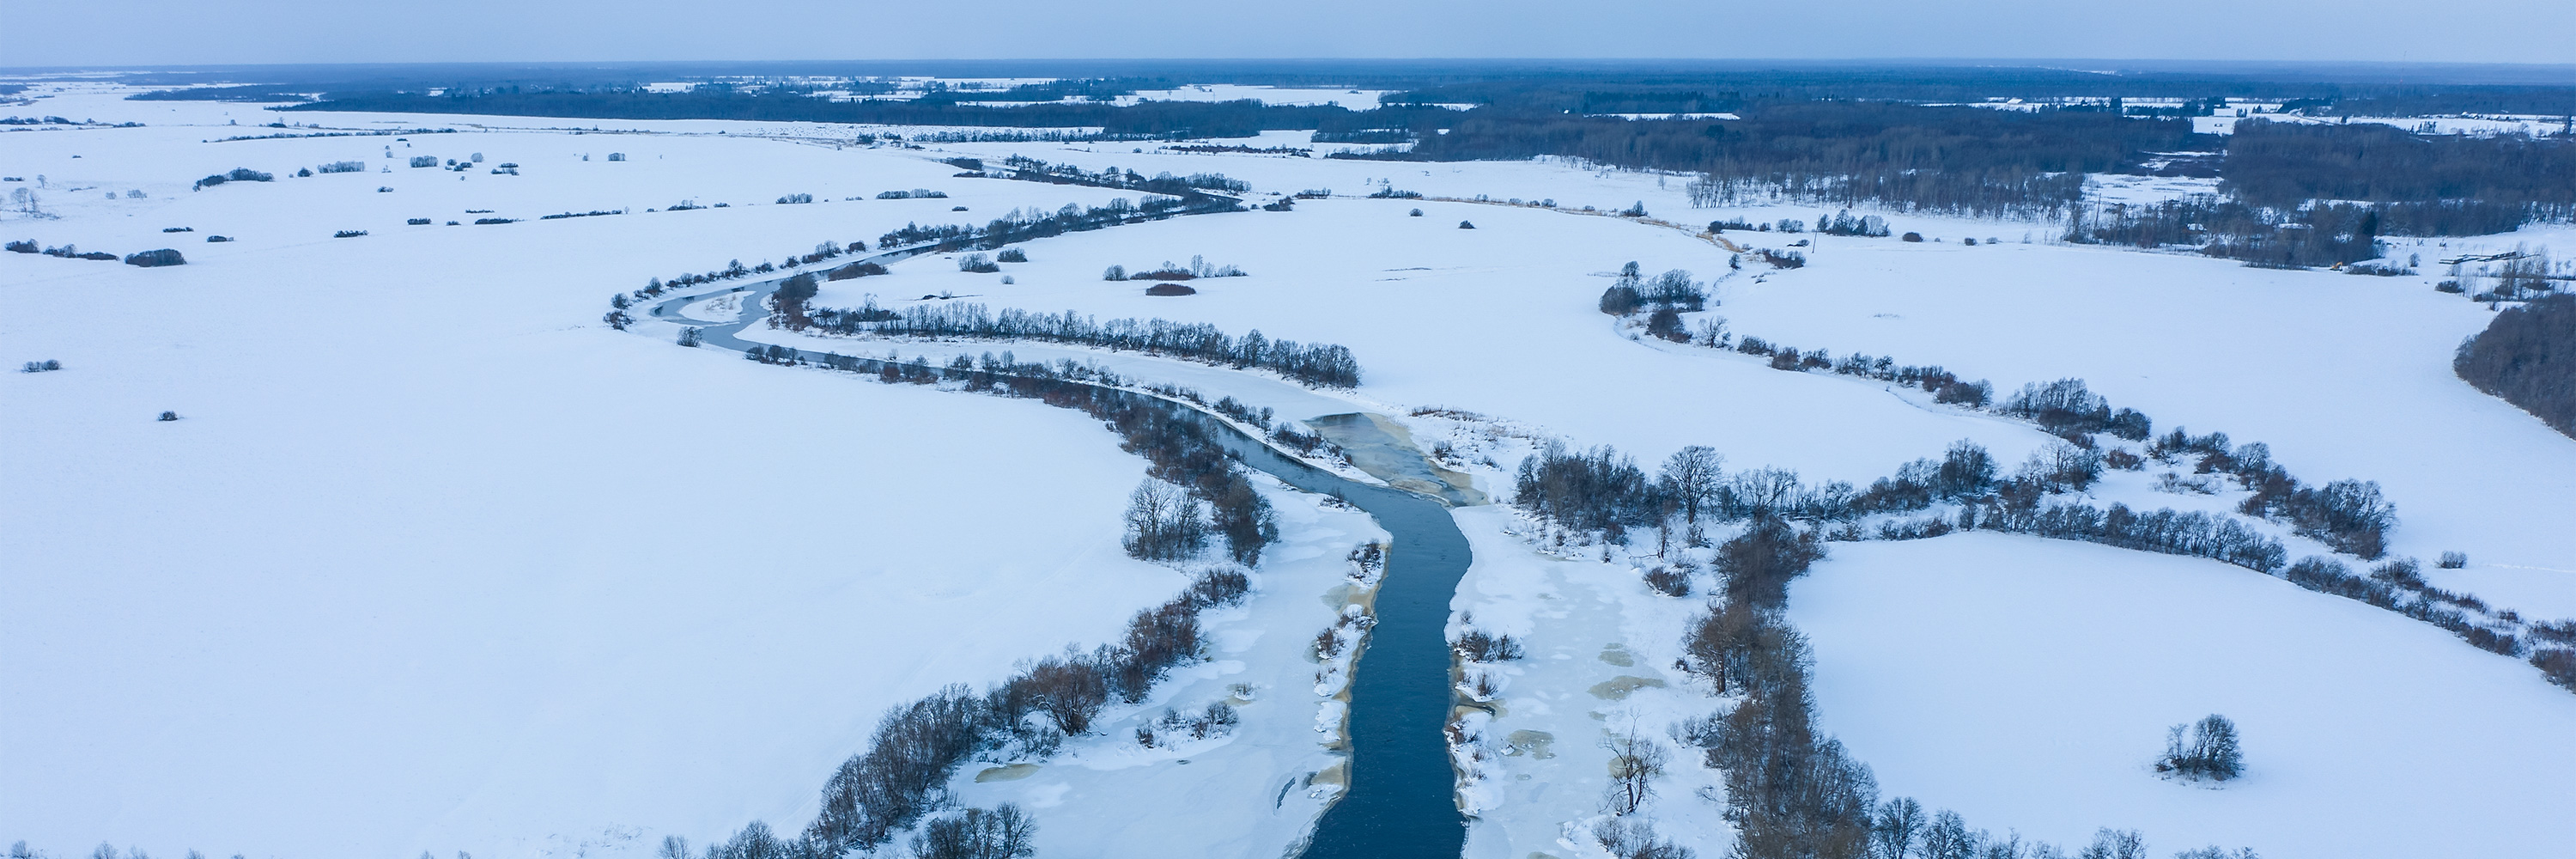 Drooni vaade talvisele Kasari jõele ja lumisele luhale (lage maa-ala, jõe ääres on puud)